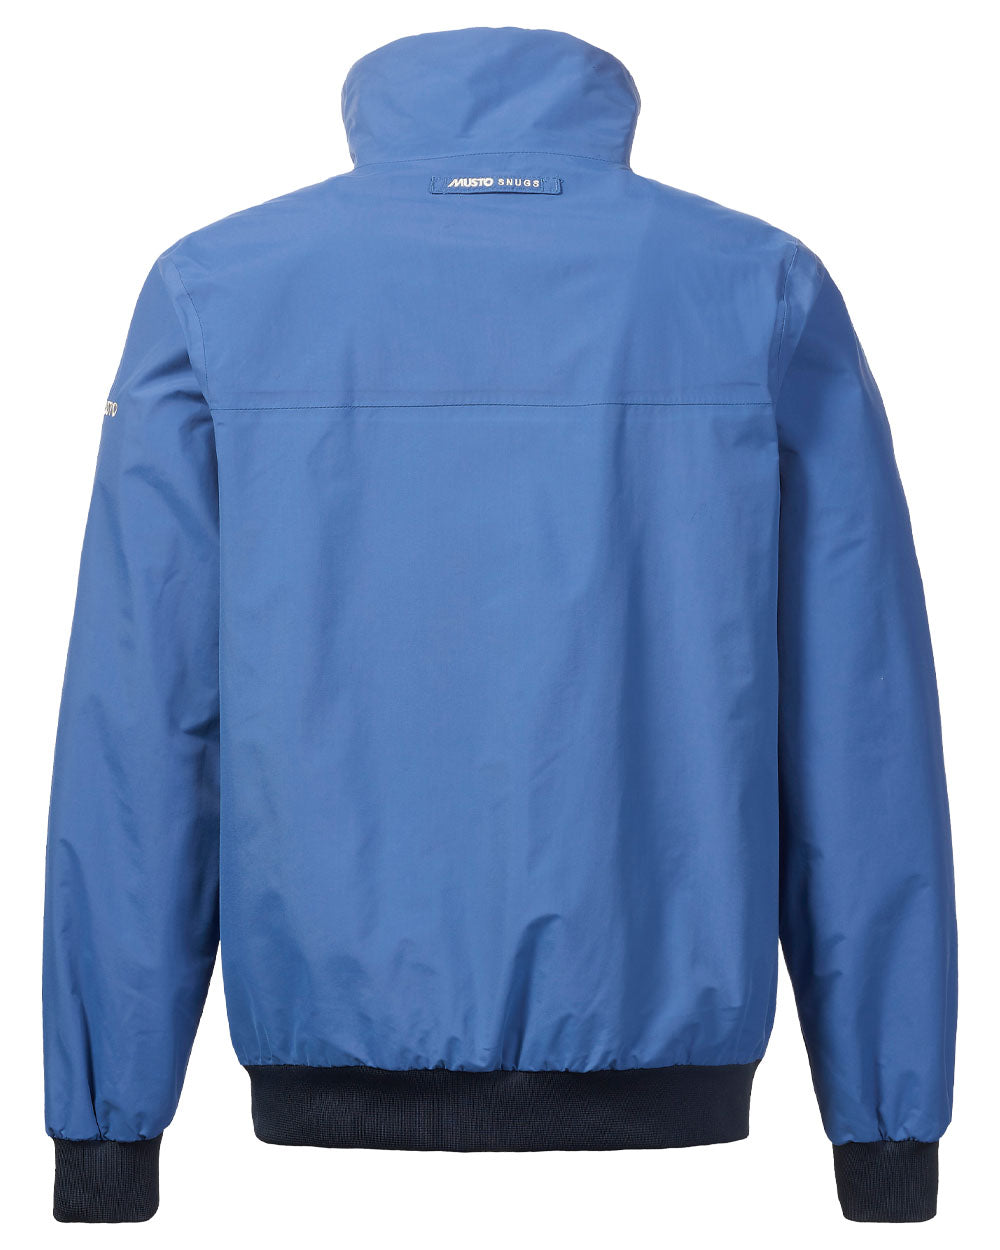 Marine Blue coloured Musto Snug Blouson Jacket on White background 